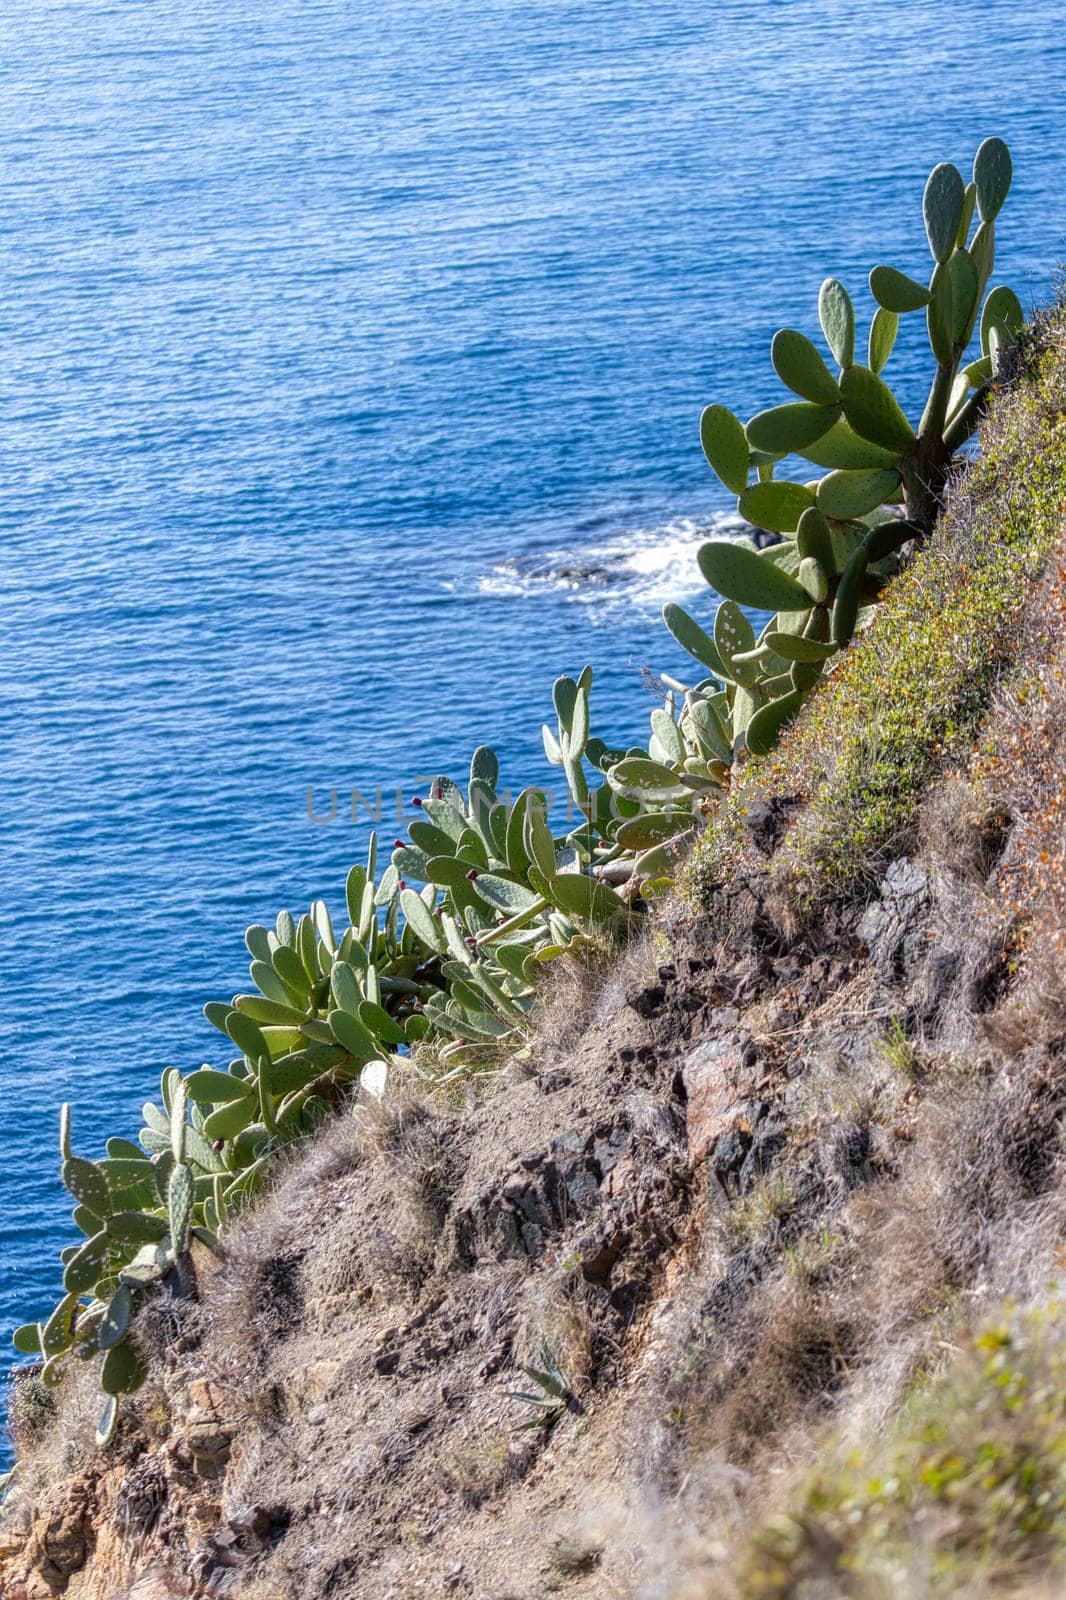 Green cactus plants in Spanish coastal in Costa Brava in spring